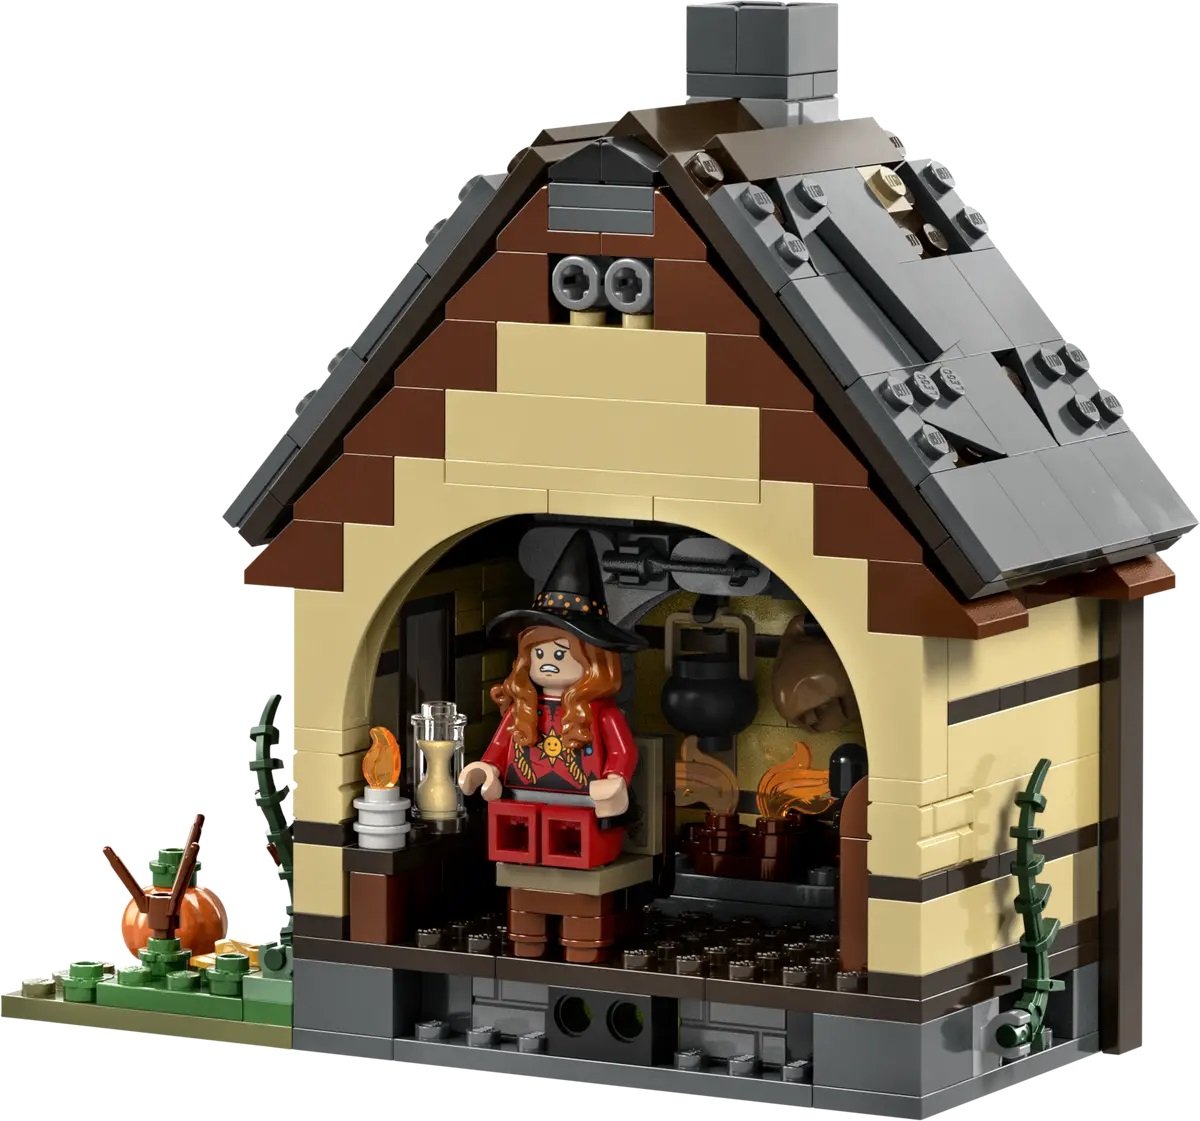 LEGO Ideas Hocus Pocus Sanderson cottage back view.